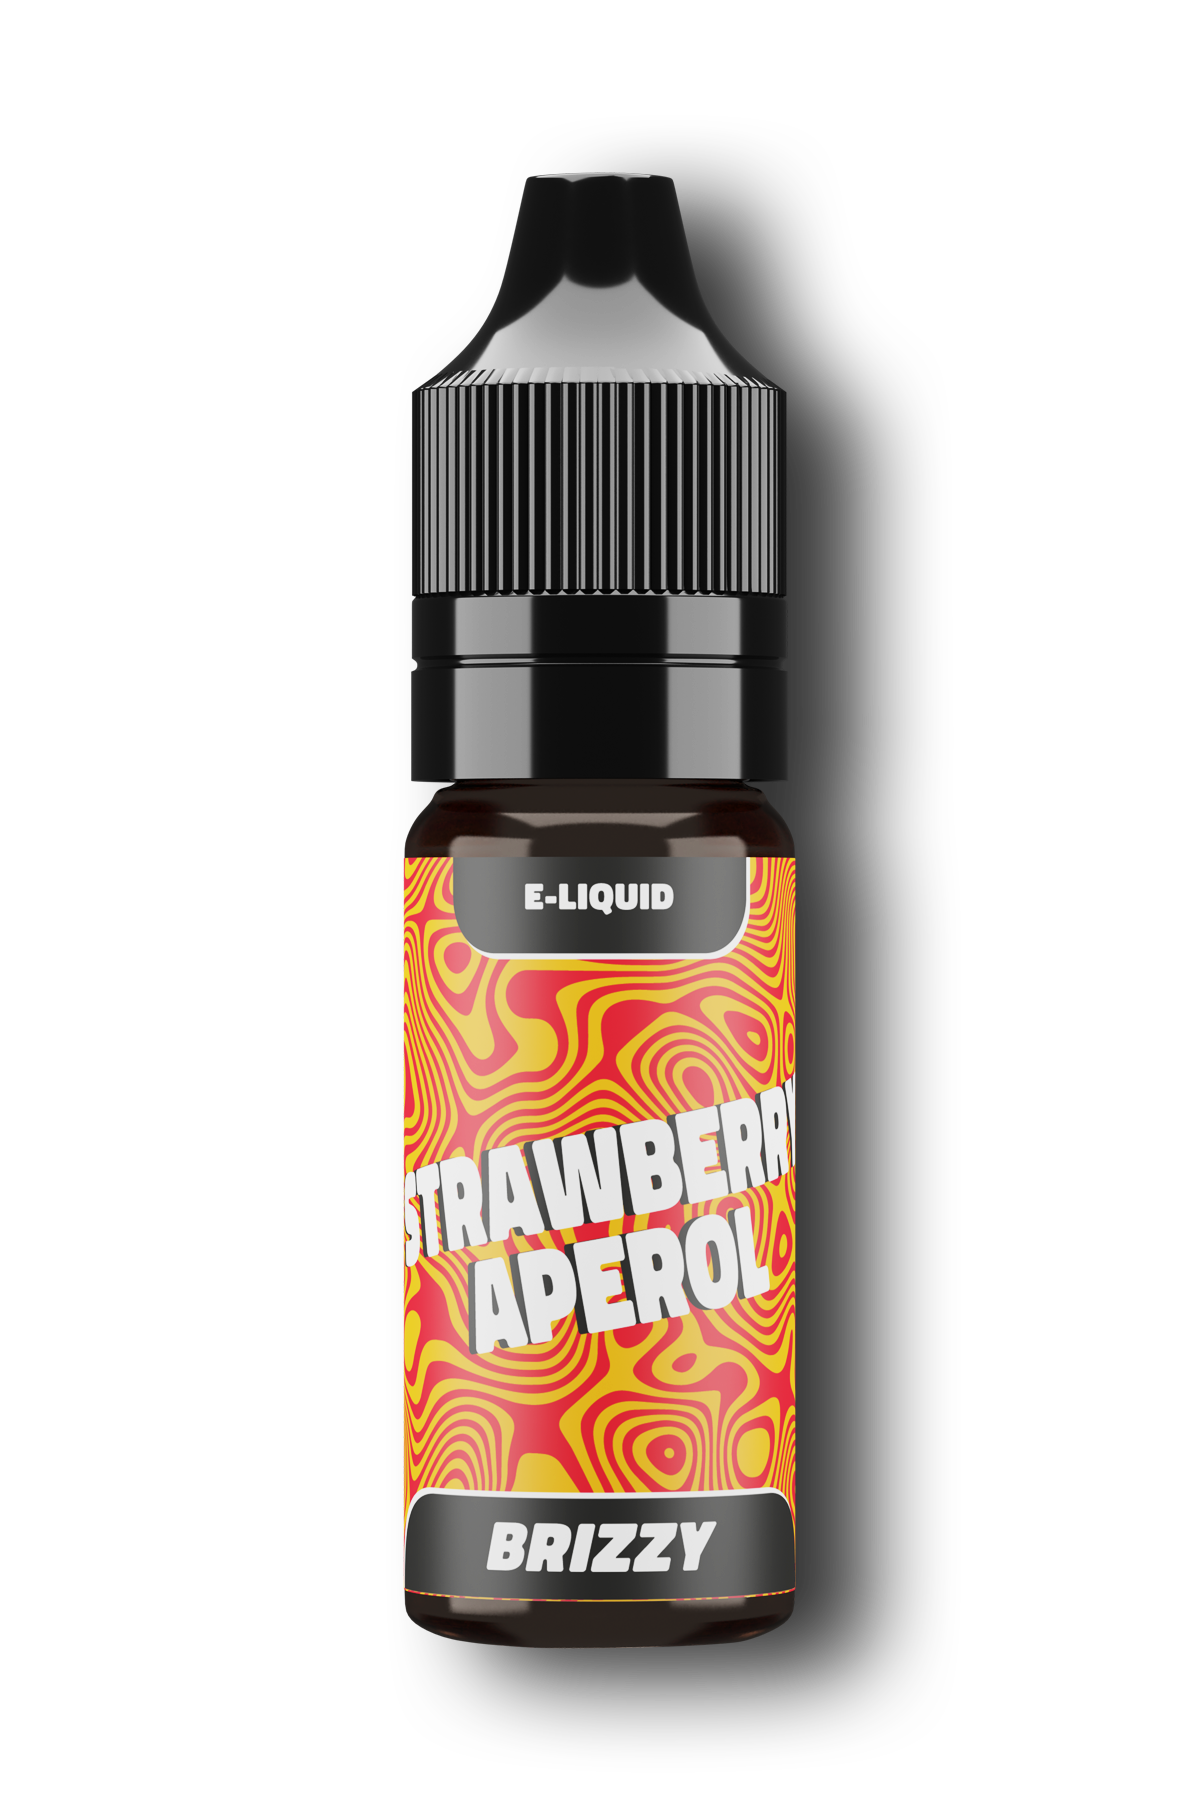 E-liquid - Brizzy Strawberry Aperol 20mg/ml